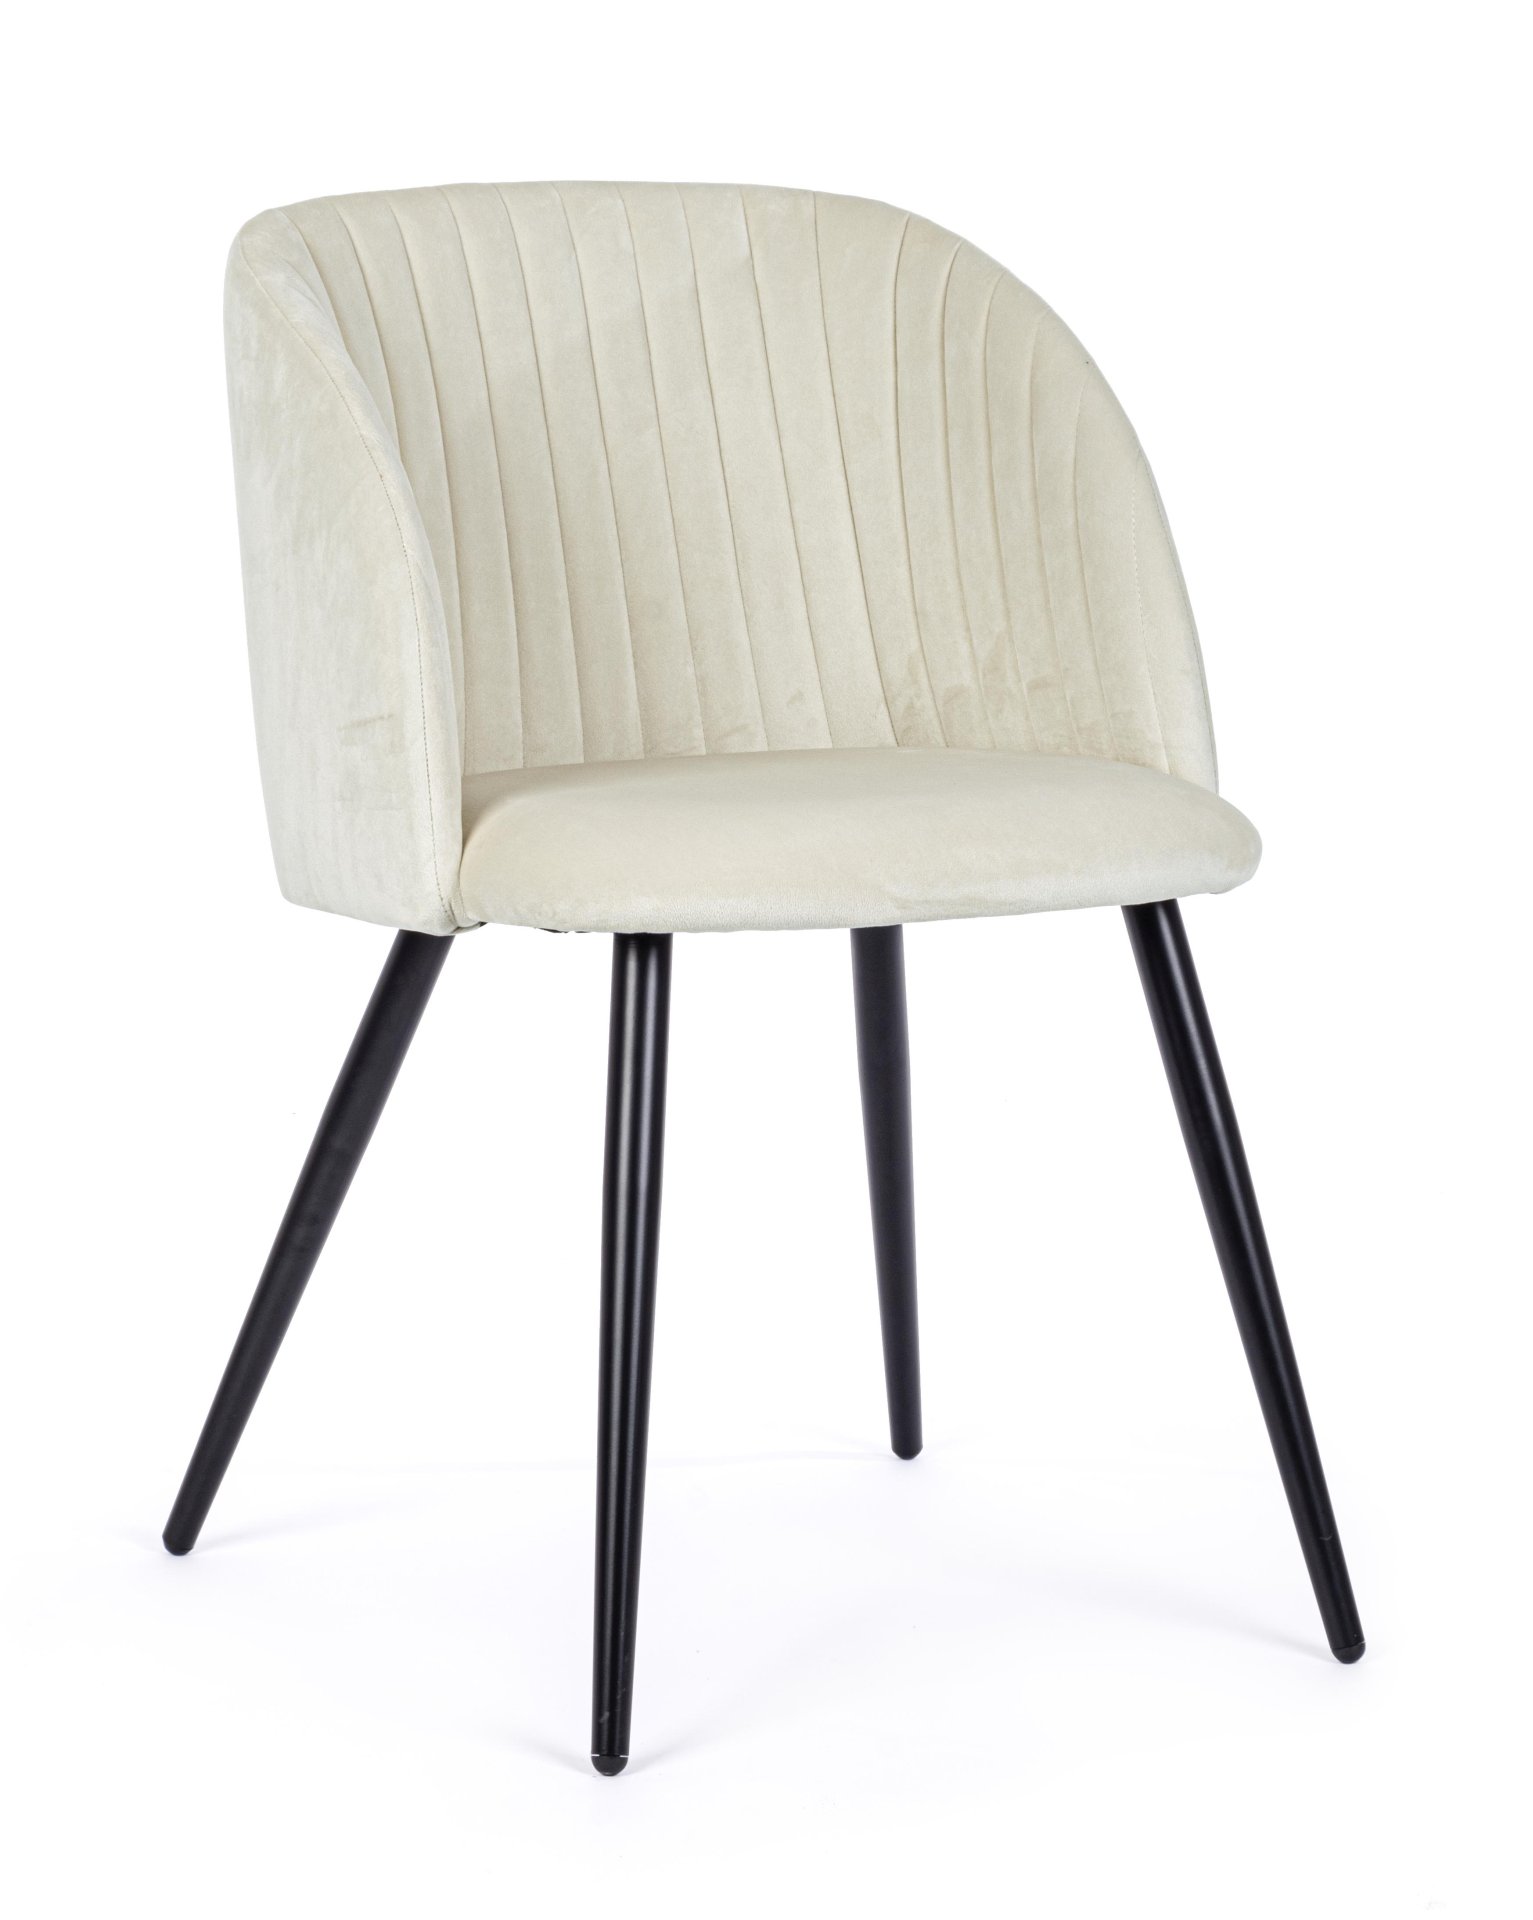 Der Esszimmerstuhl Queen überzeugt mit seinem modernem Design. Gefertigt wurde der Stuhl aus einem Samt-Bezug, welcher einen weißen Farbton besitzt. Das Gestell ist aus Metall und ist Schwarz. Die Sitzhöhe beträgt 49 cm.